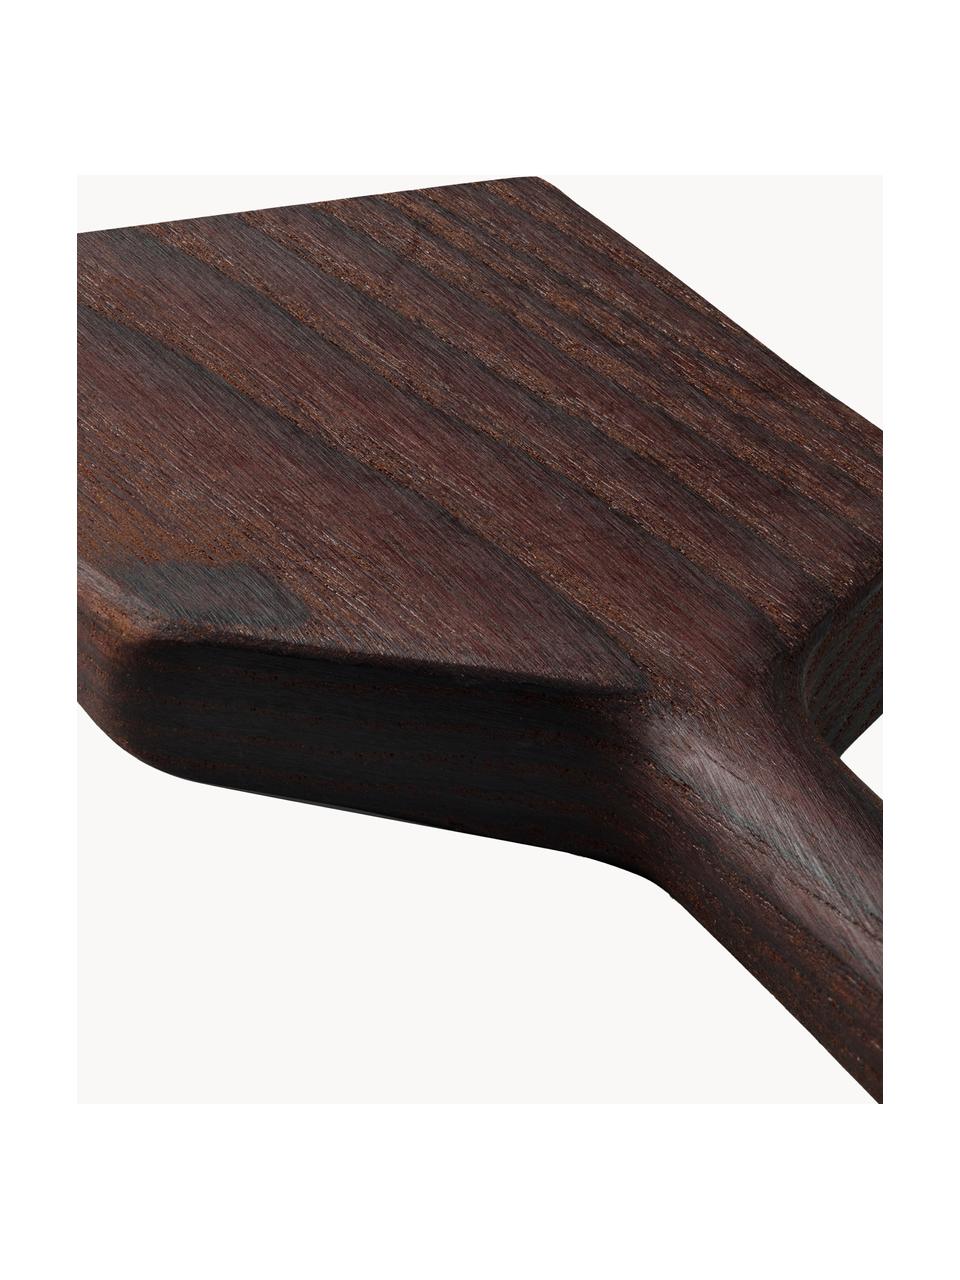 Pfannenwender RÅ aus Eschenholz, Eschenholz, FSC-zertifiziert, Dunkles Holz, L 30 cm